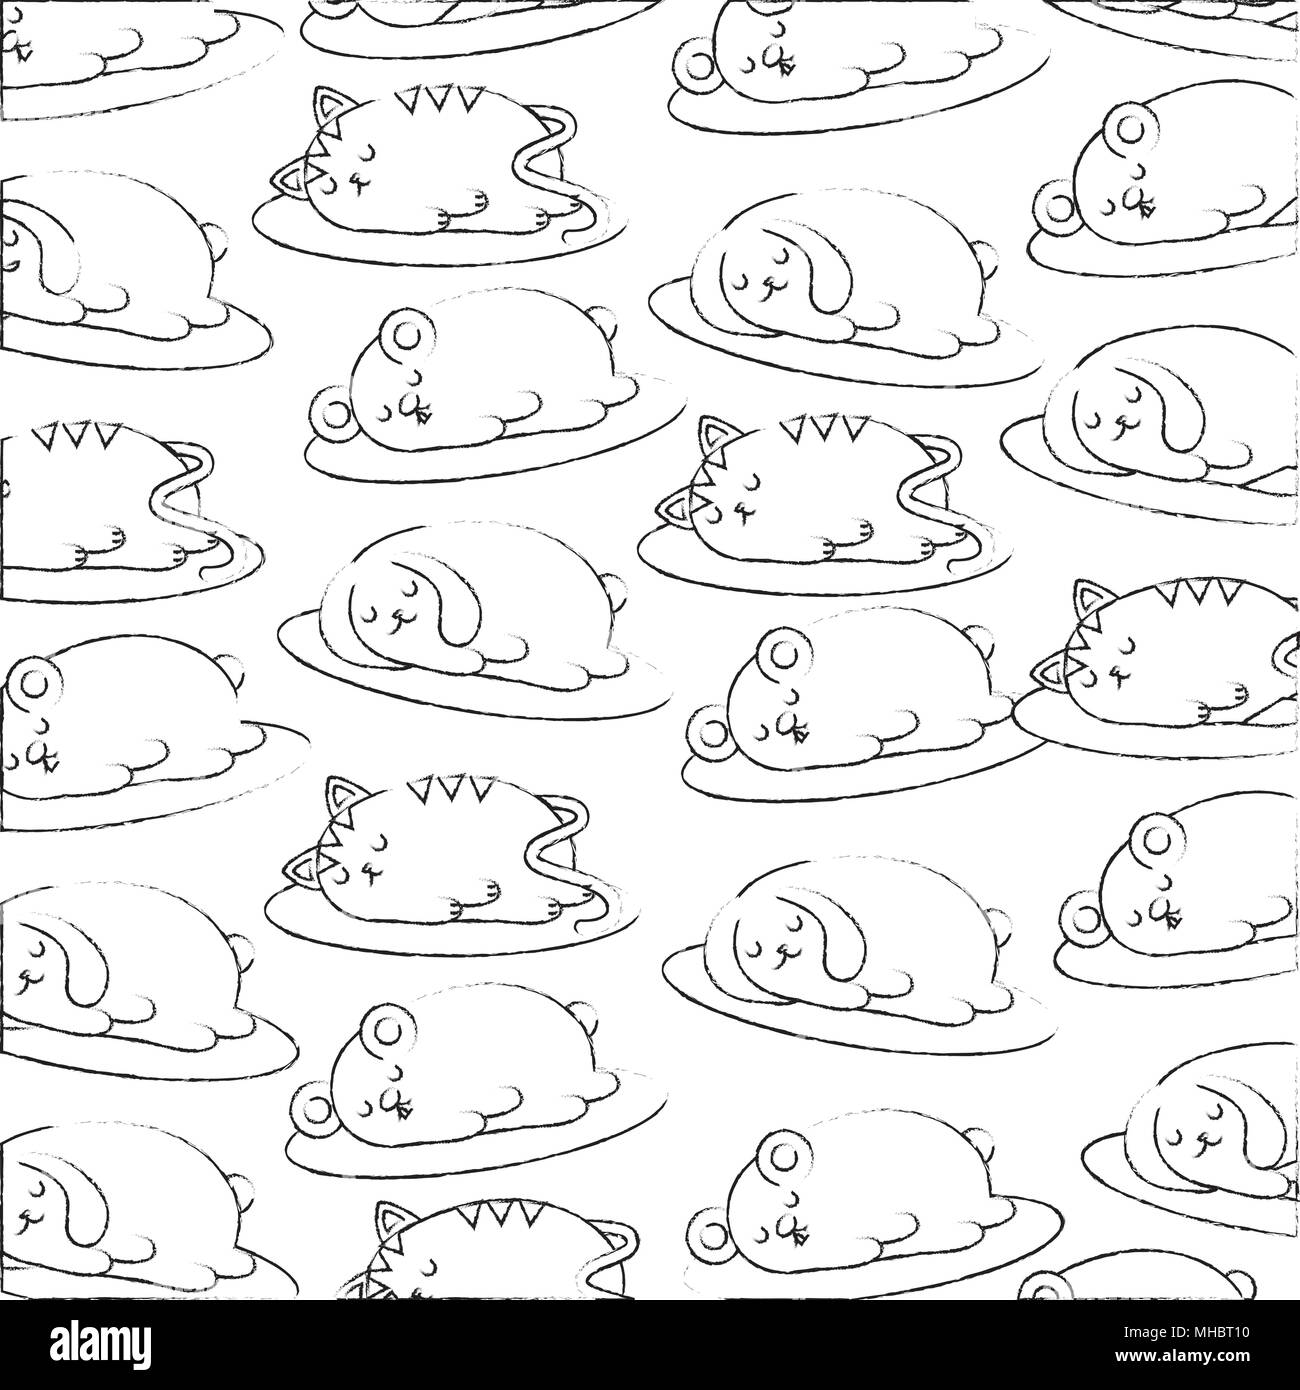 Niedlich kawaii bunny Maus und Katze schlafen Tapeten Vector Illustration Stock Vektor